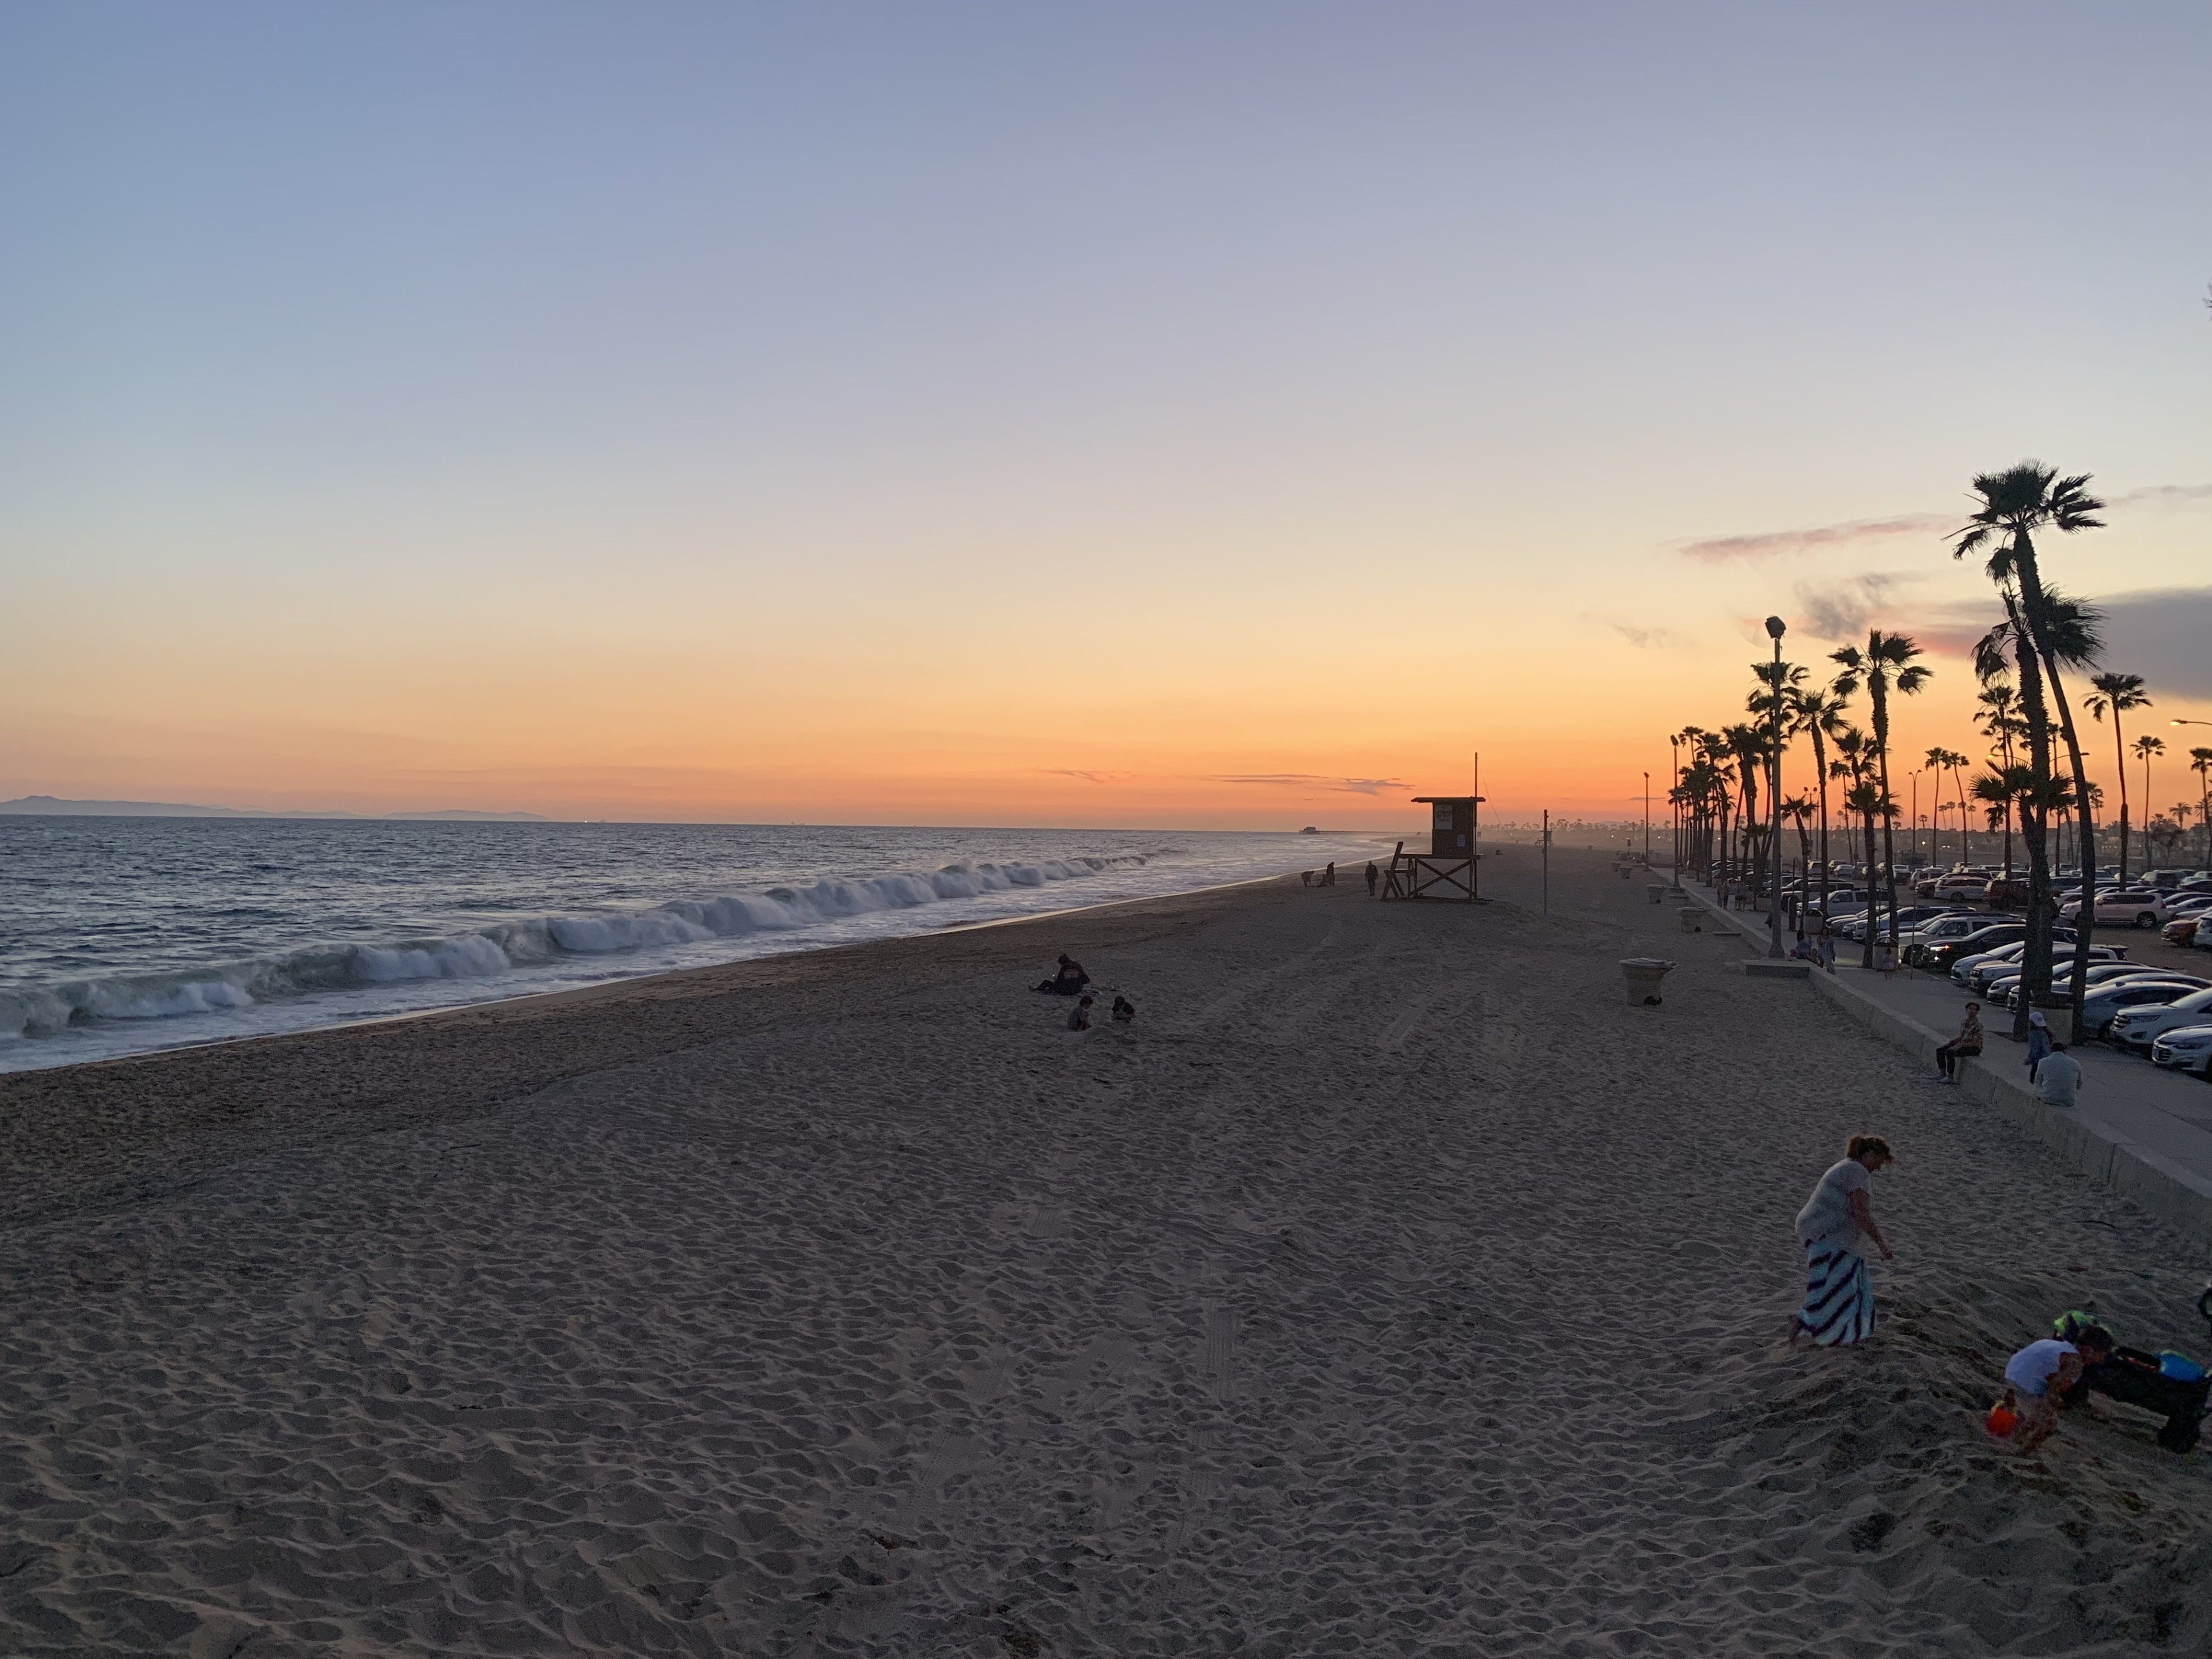 Balboa beach front